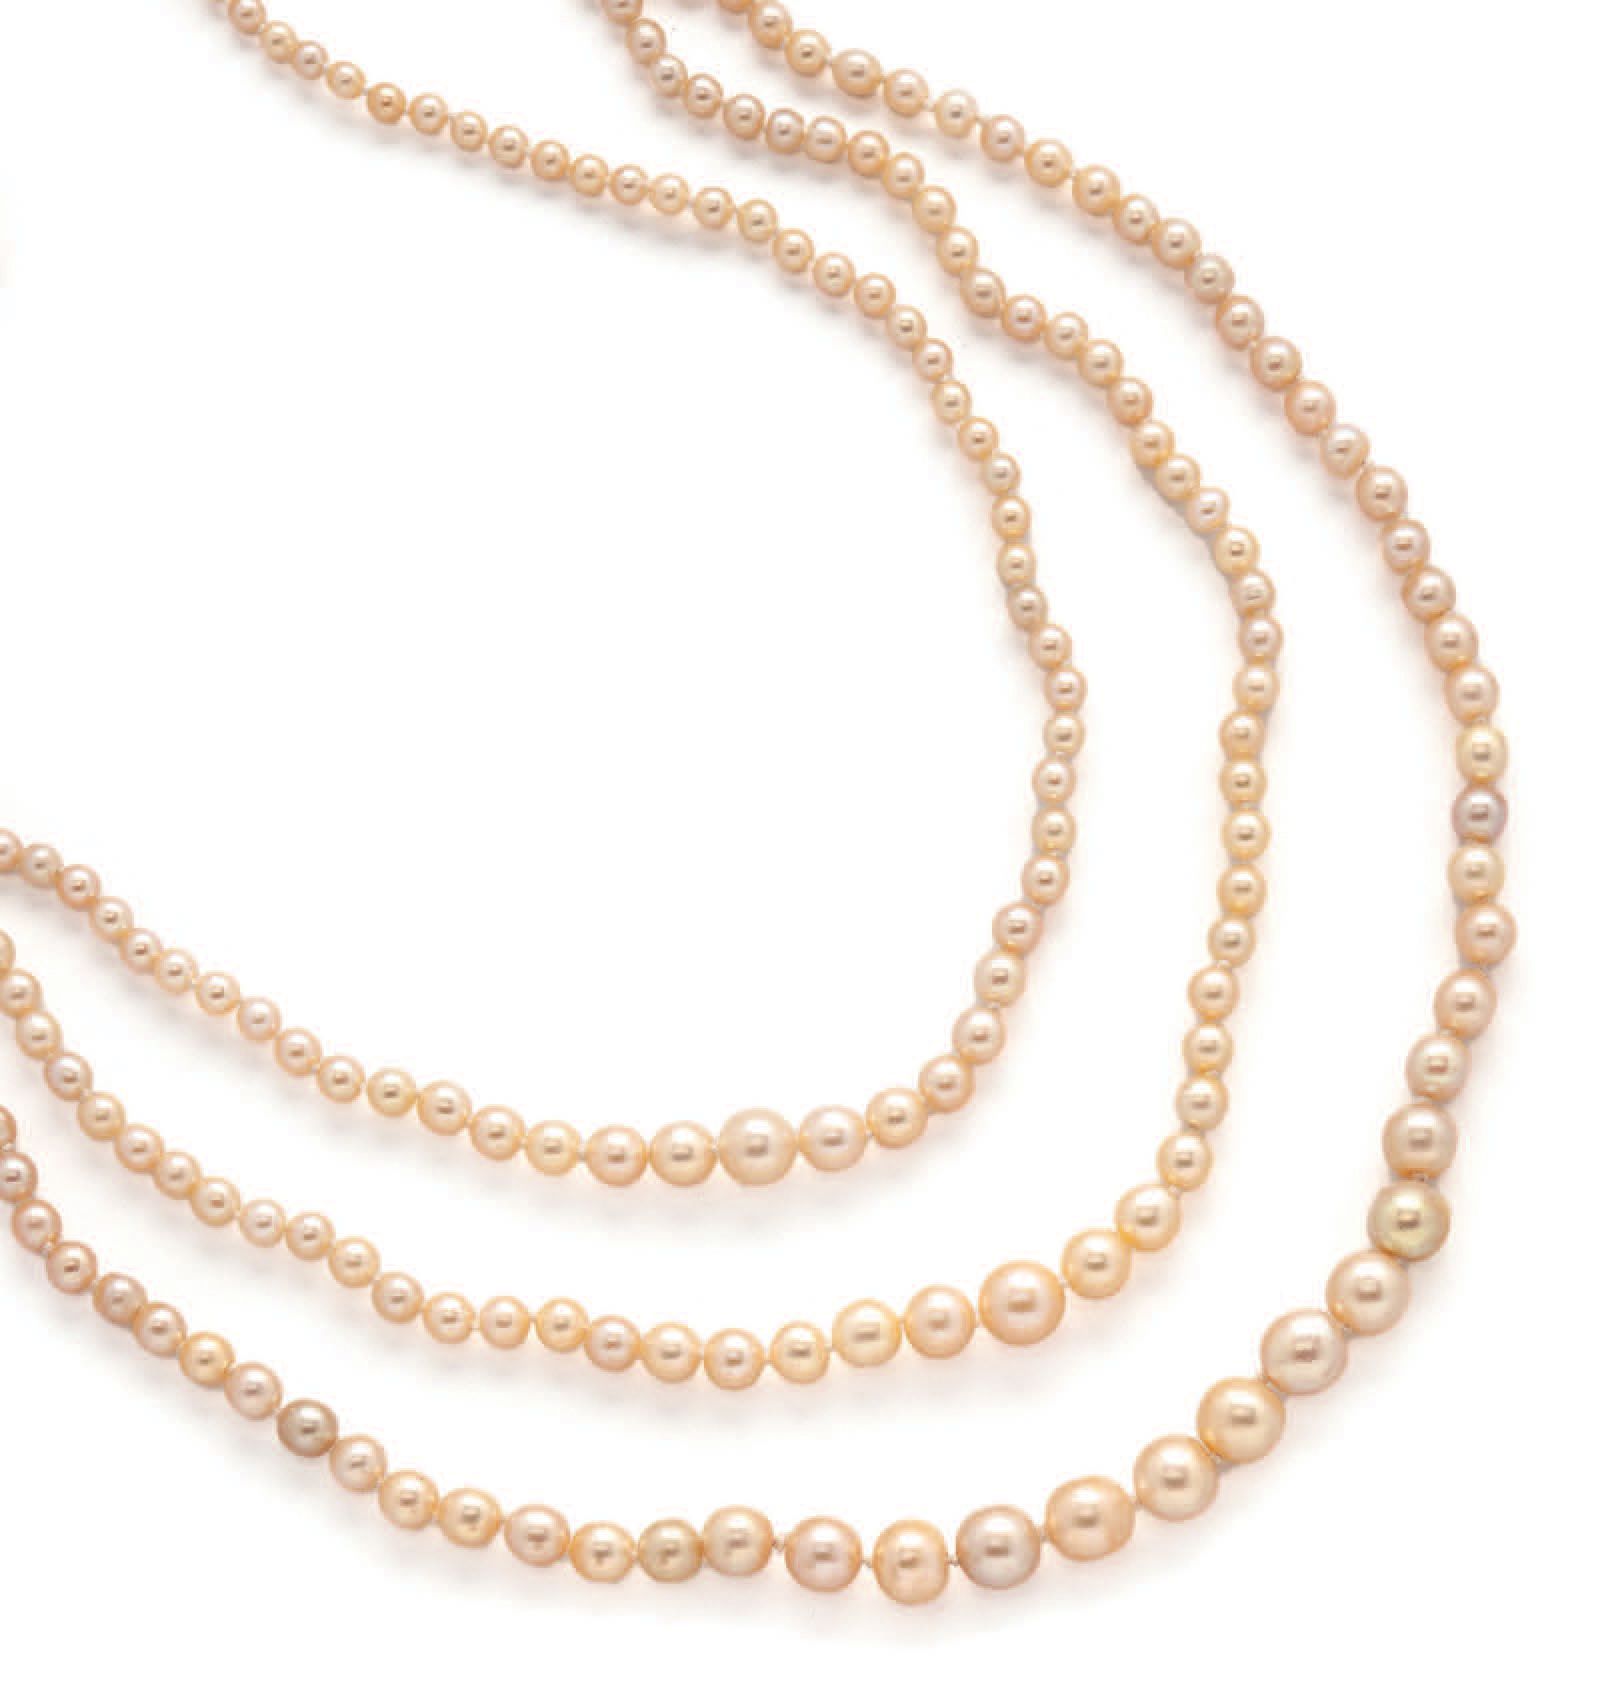 Null 
Collier aus drei Reihen weißer Perlen, wohl fein, im Herbst arrangiert. 

&hellip;